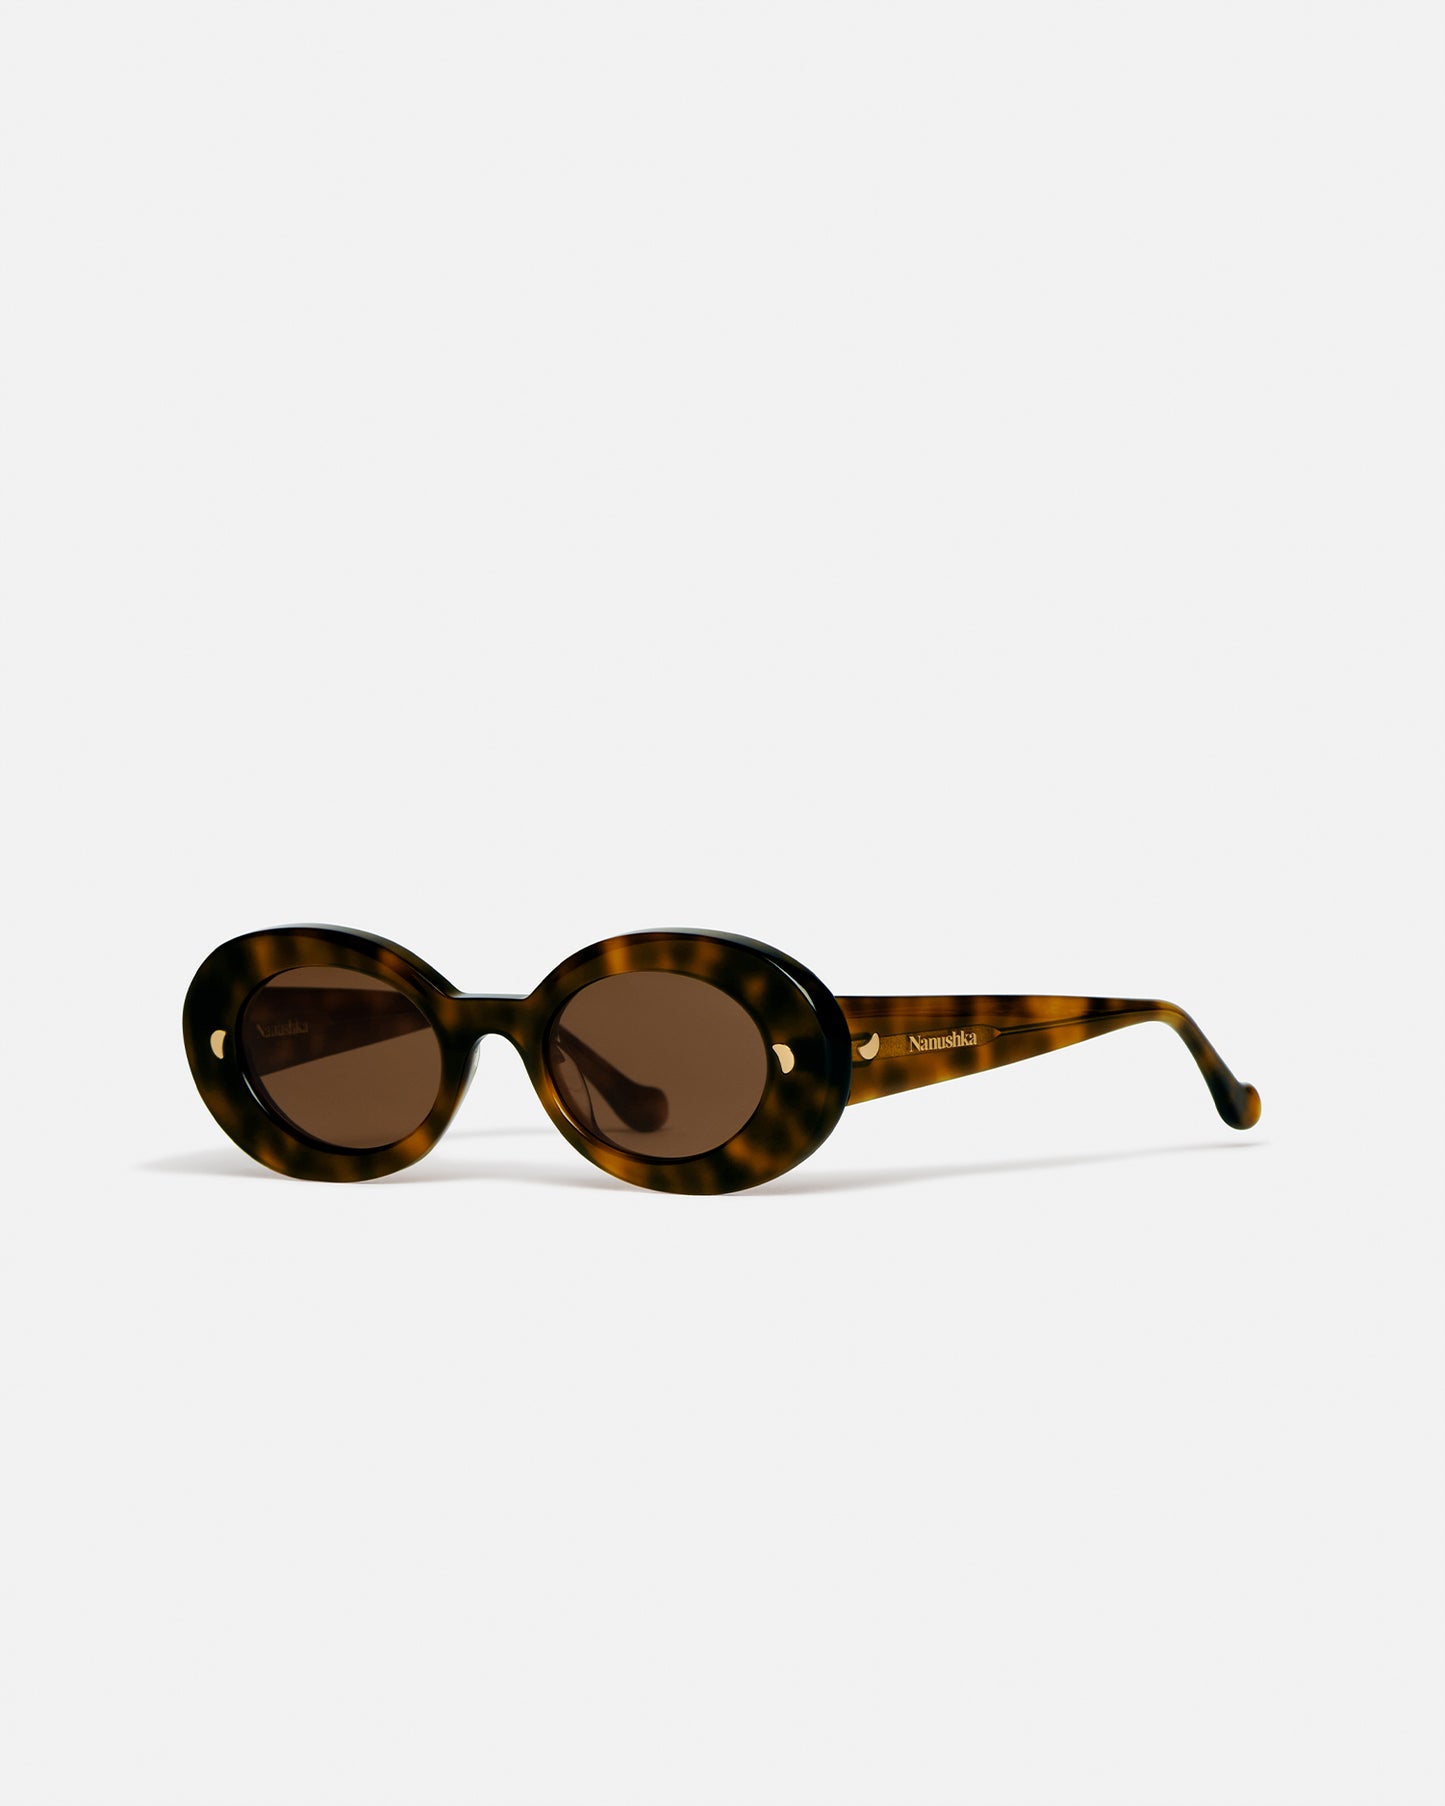 Giva - Bio-Plastic Oval Sunglasses - Dark Amber